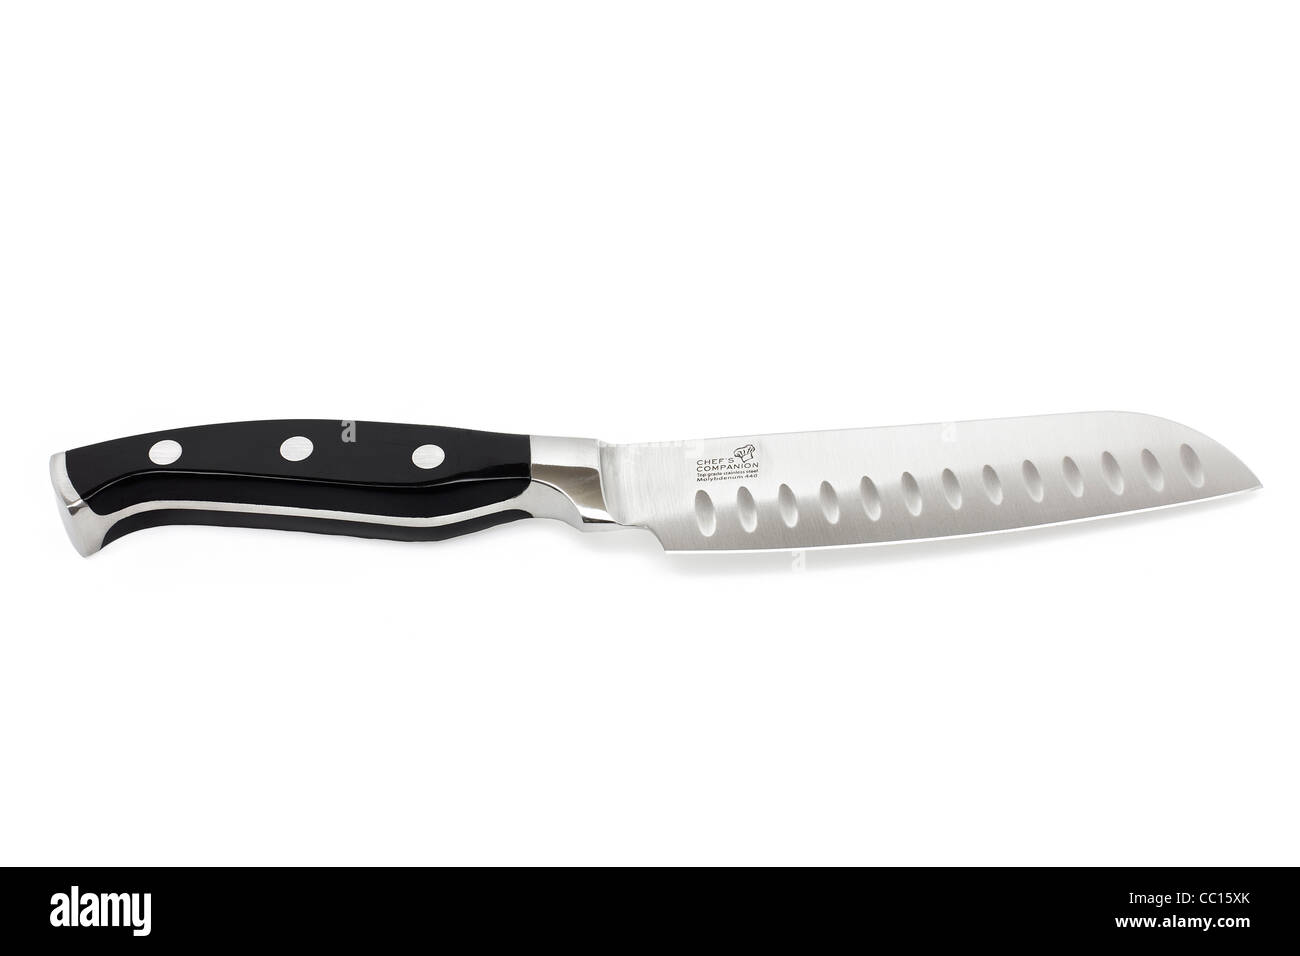 Küchenchef Messer Begleiter Produkt Einzelhandel Aufnahmen auf rein weißen Hintergrund fotografiert unter Studiobeleuchtung. Stockfoto